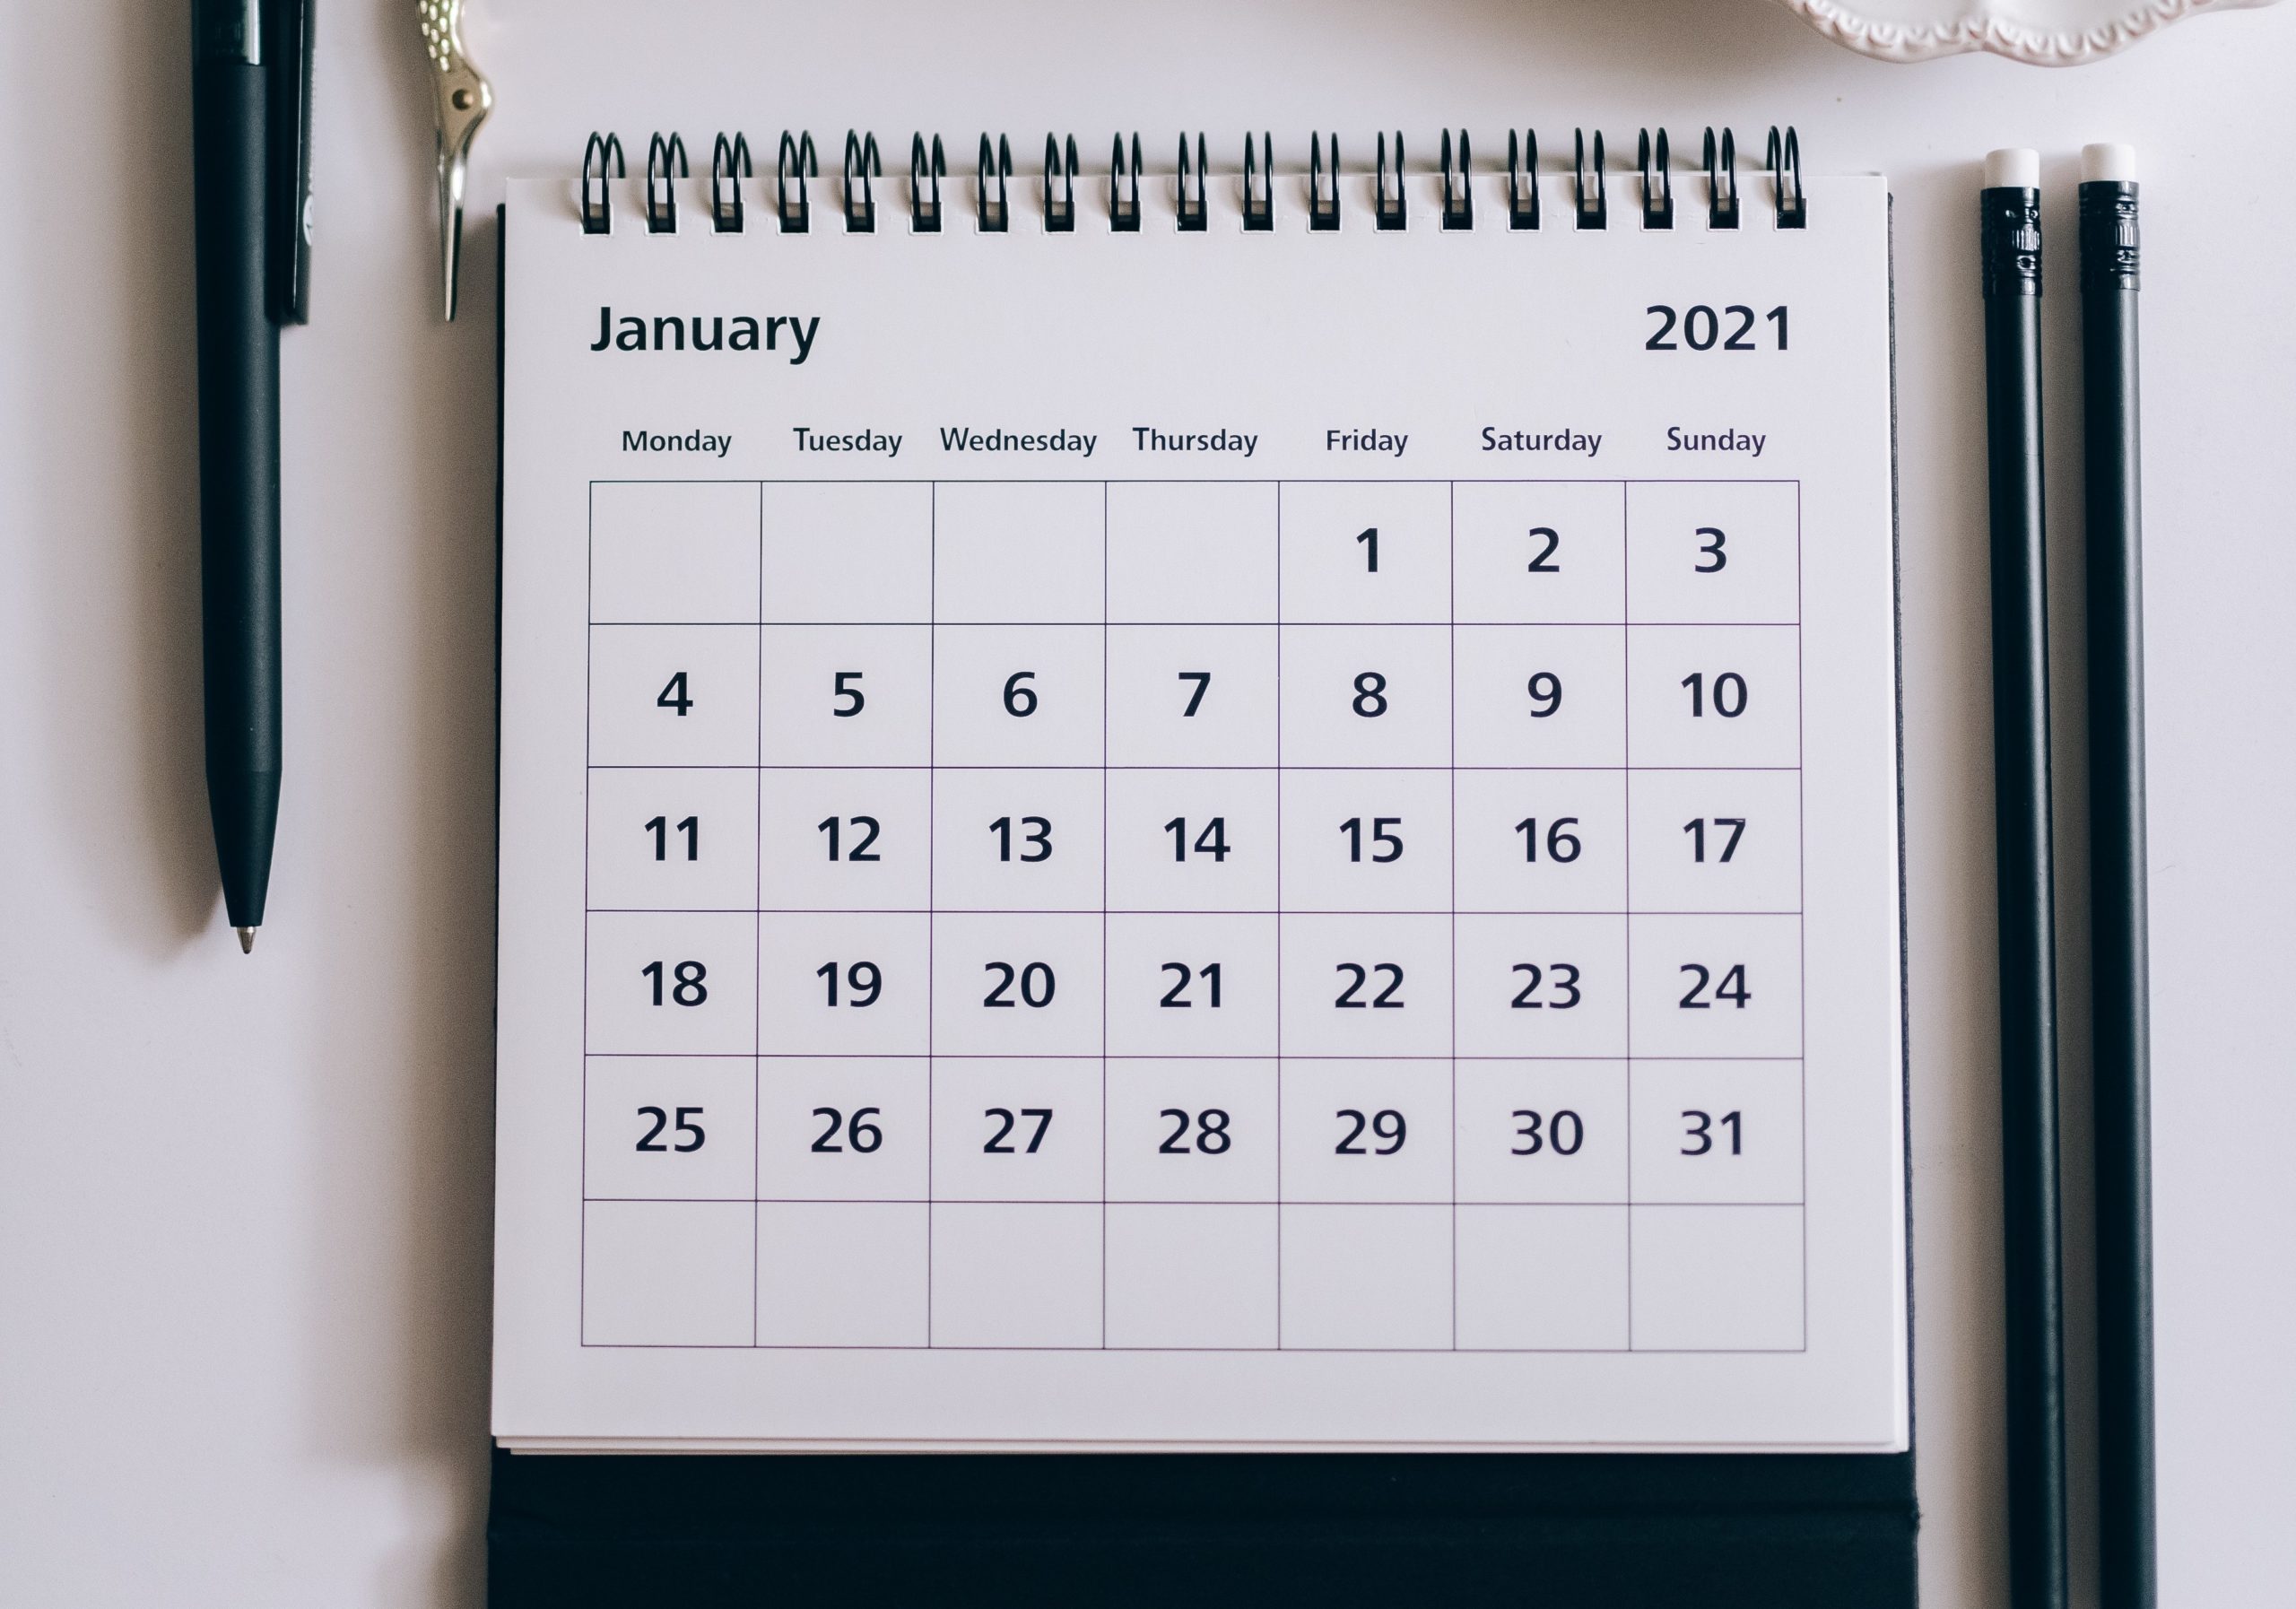 Jan 2021 calendar